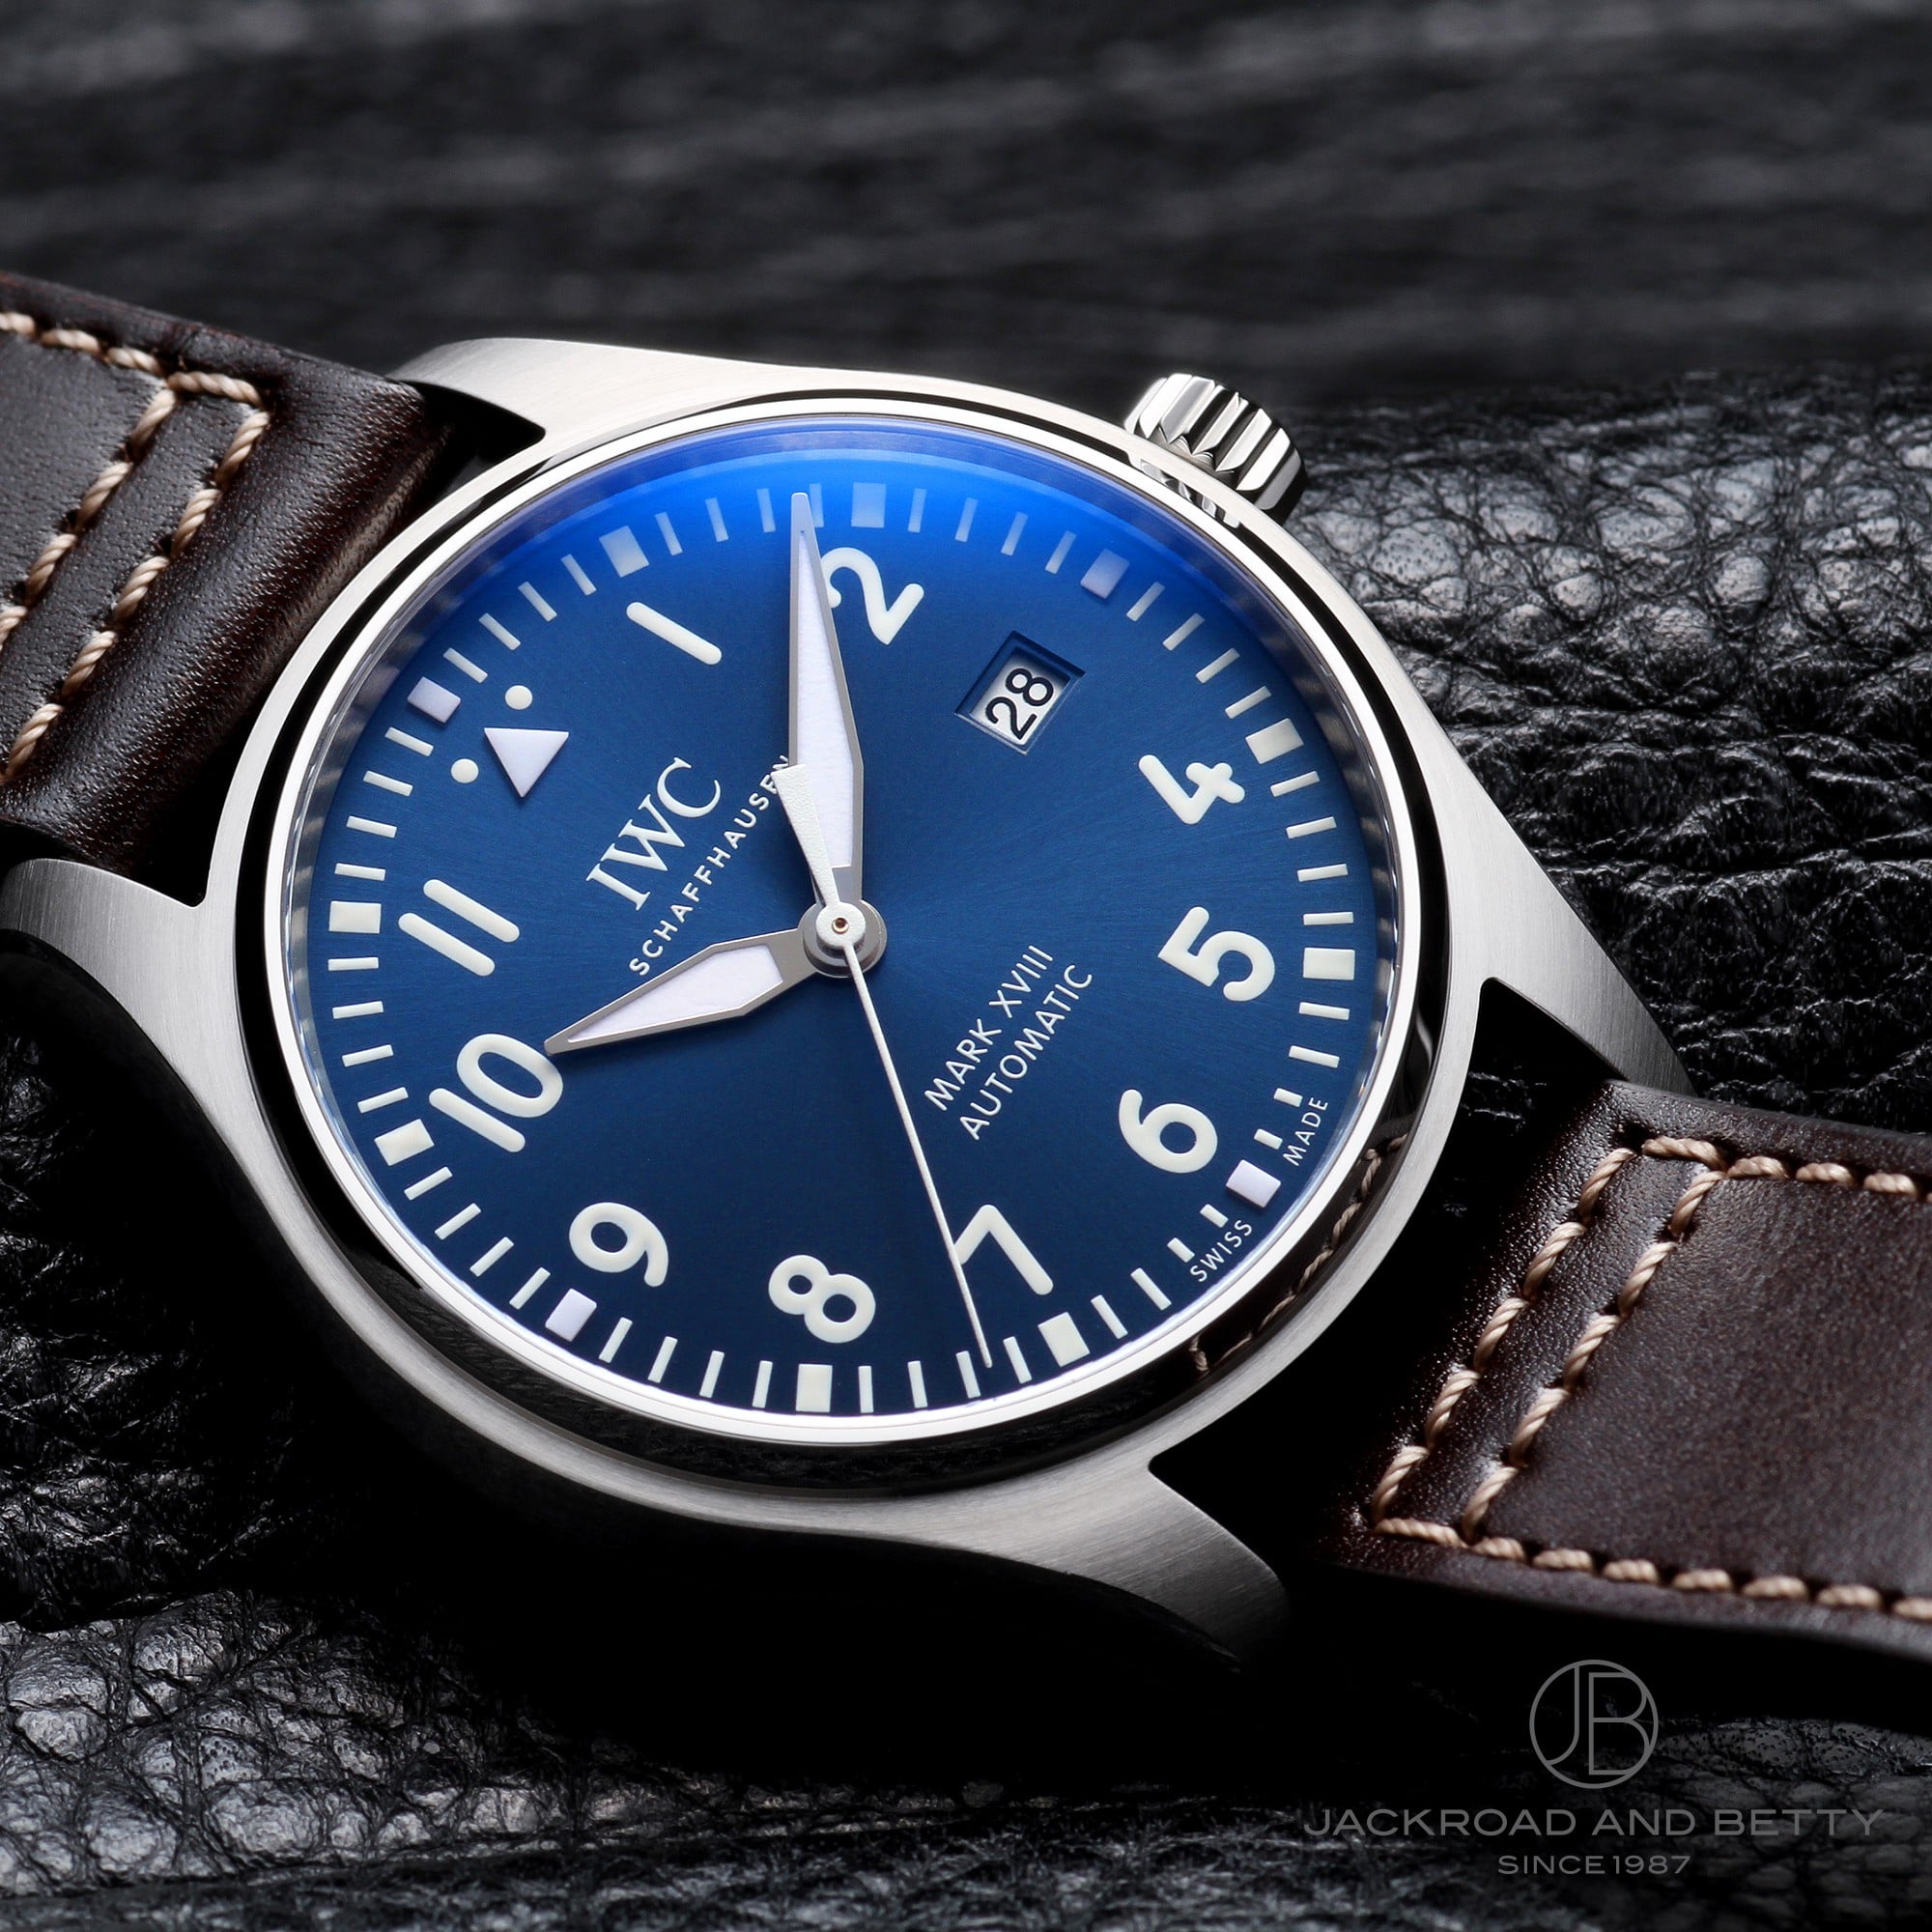 インターナショナルウォッチカンパニー IWC IW327010 ブルー メンズ 腕時計